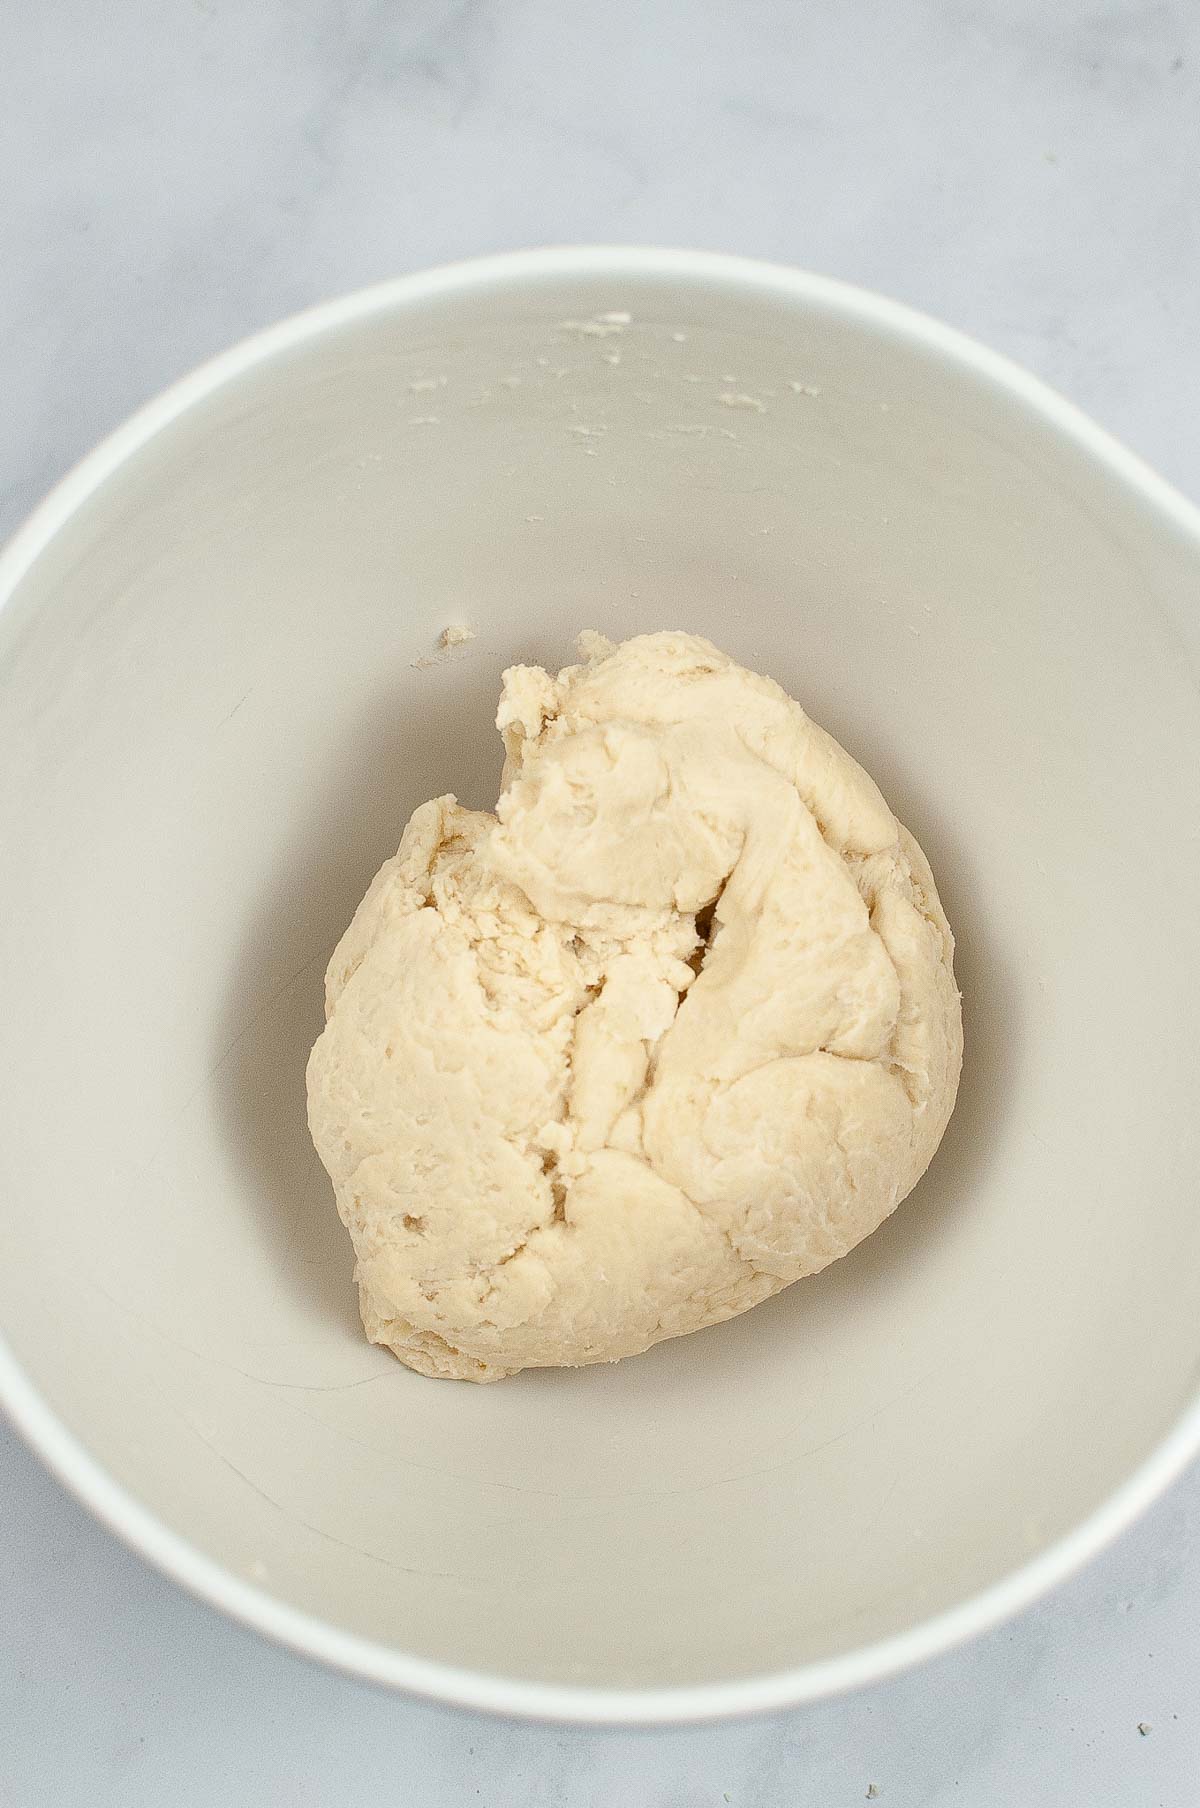 Pie crust dough in a bowl